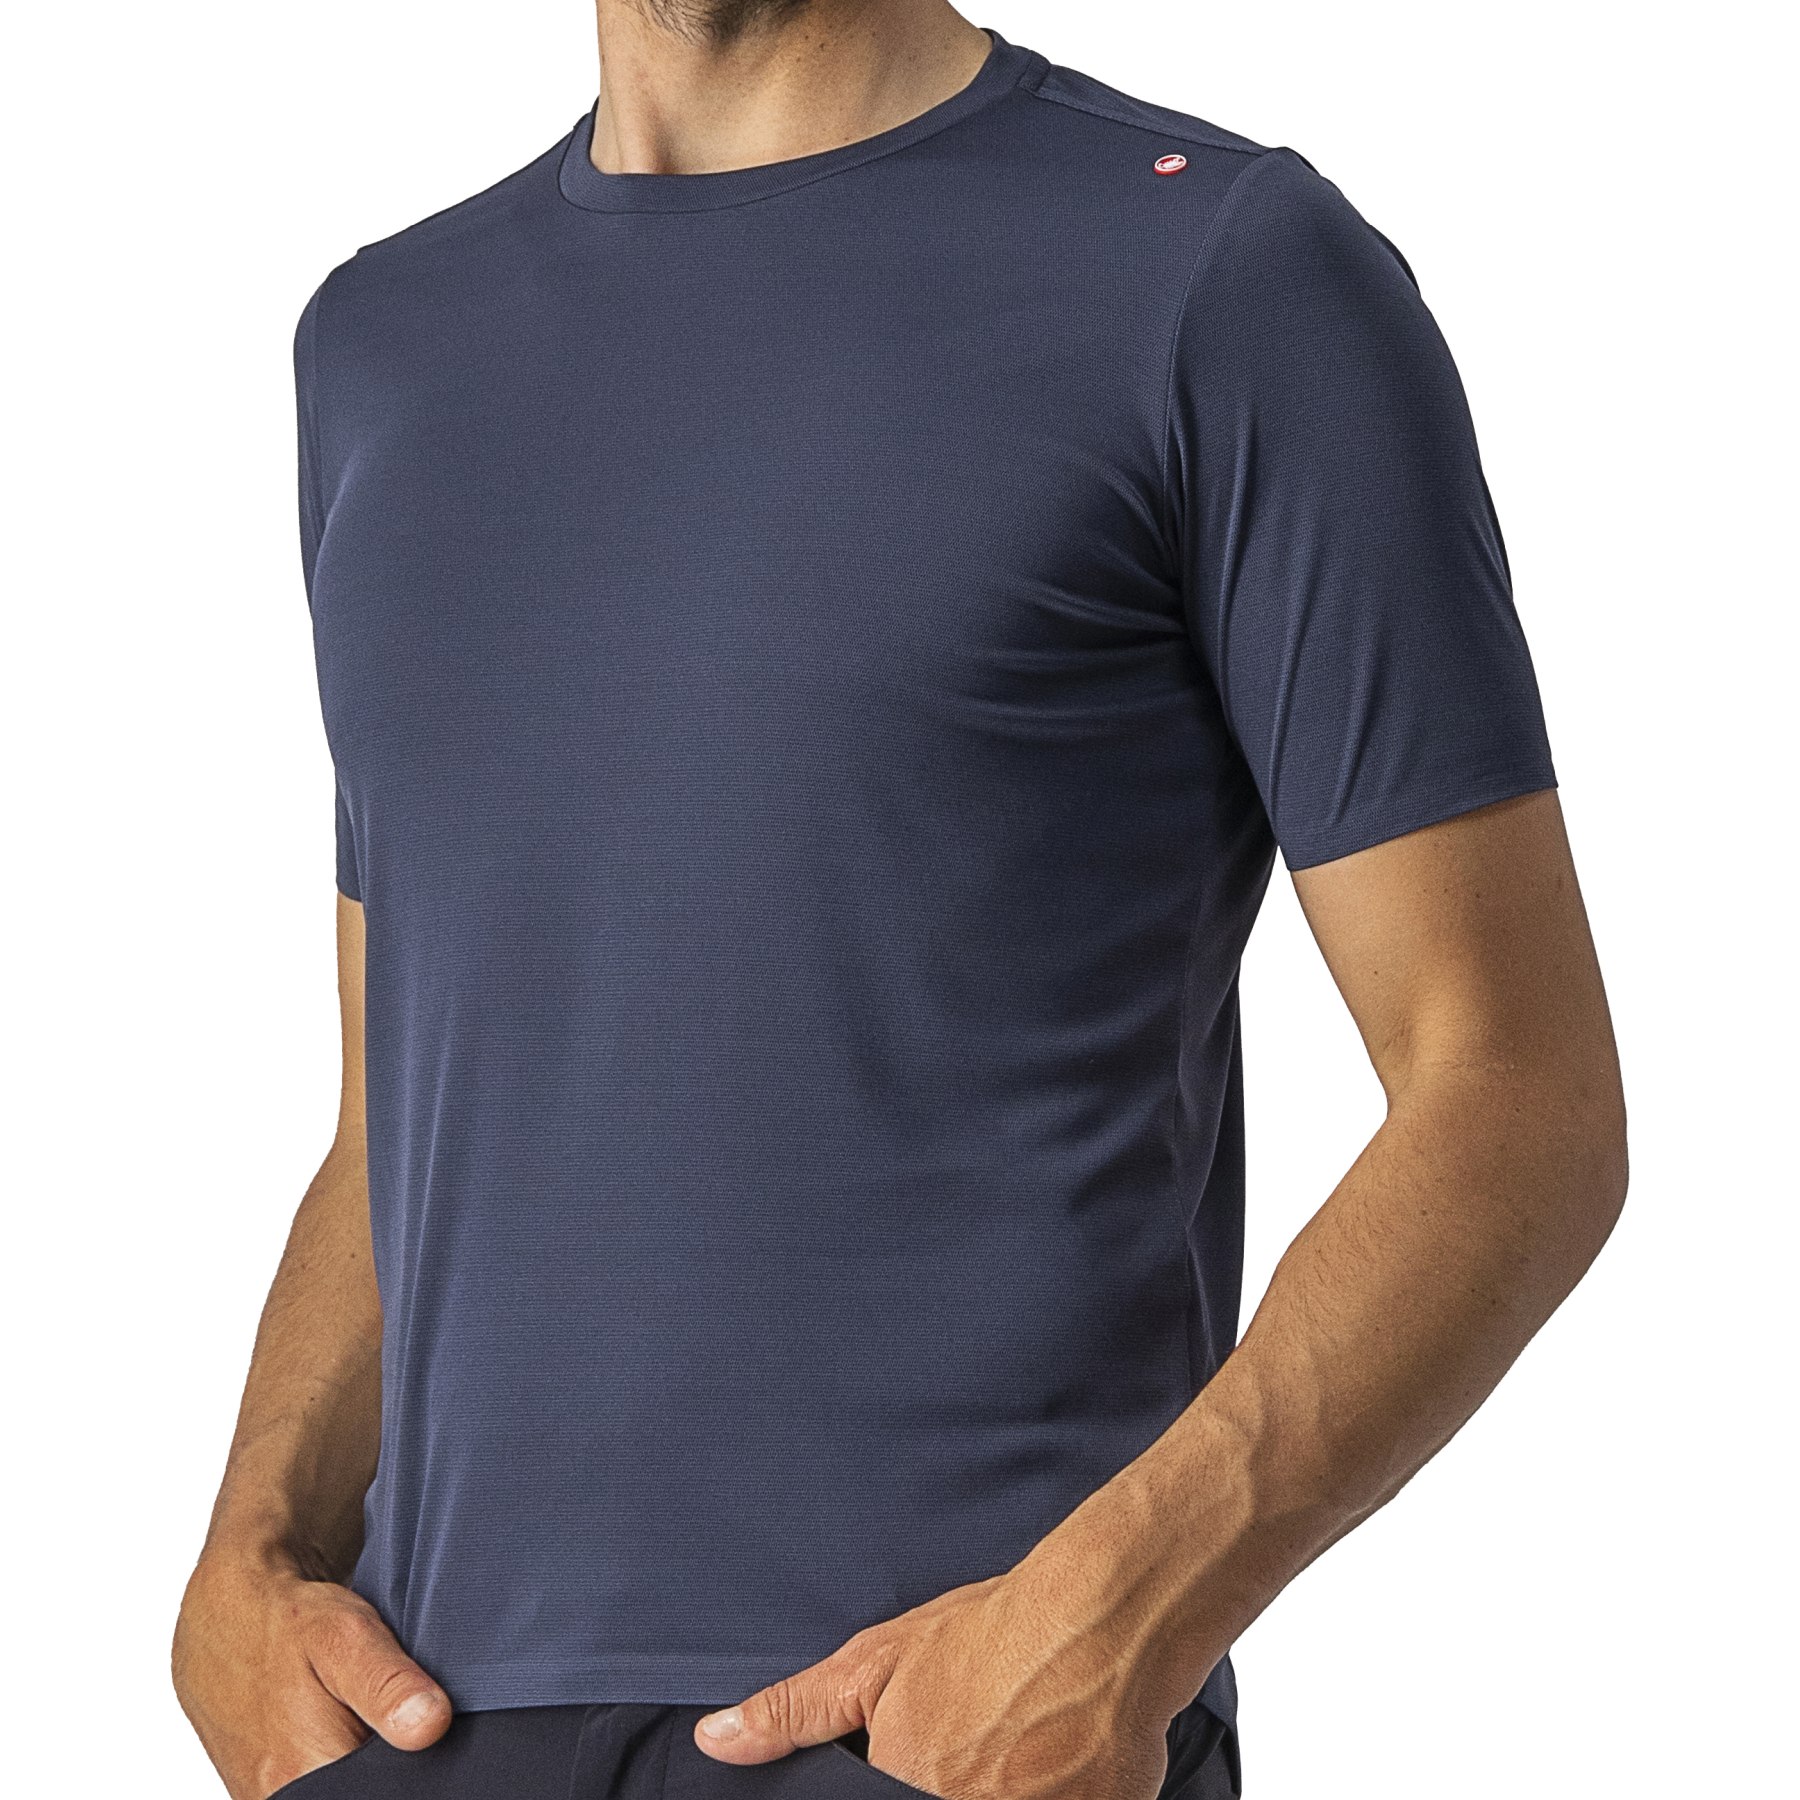 Bild von Castelli Tech 2 T-Shirt Herren - savile blue 414